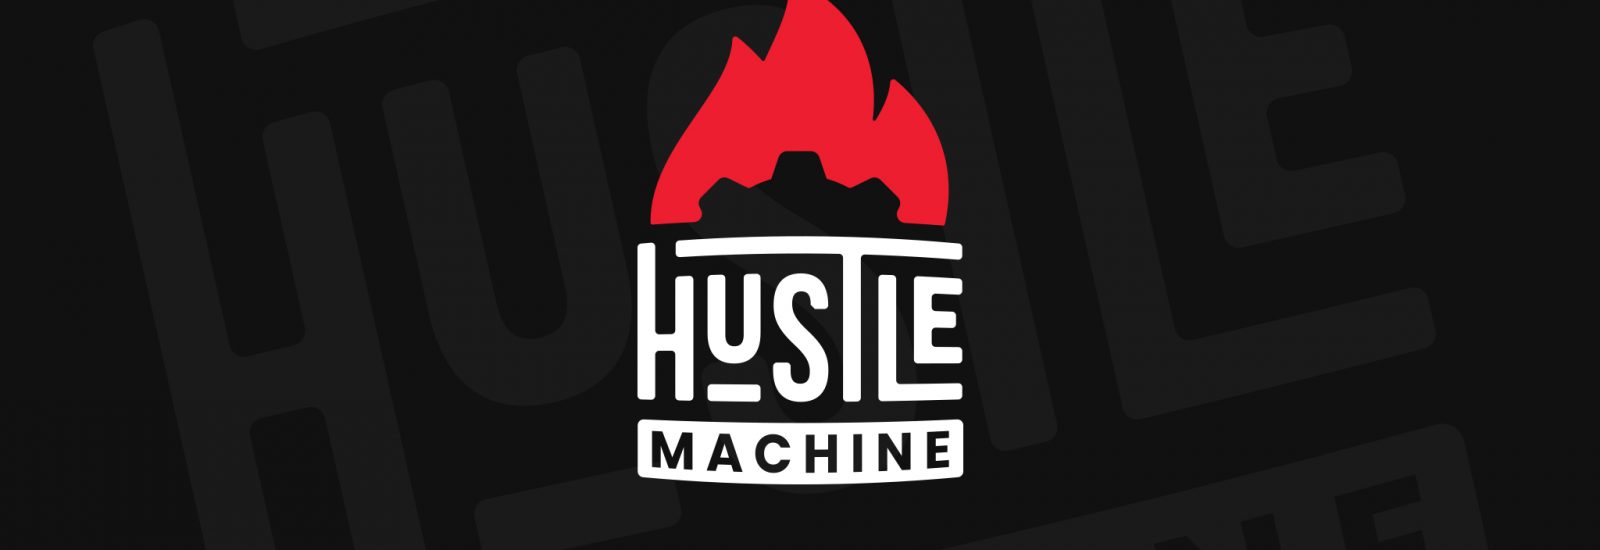 HustleMachine-Facebook-Header